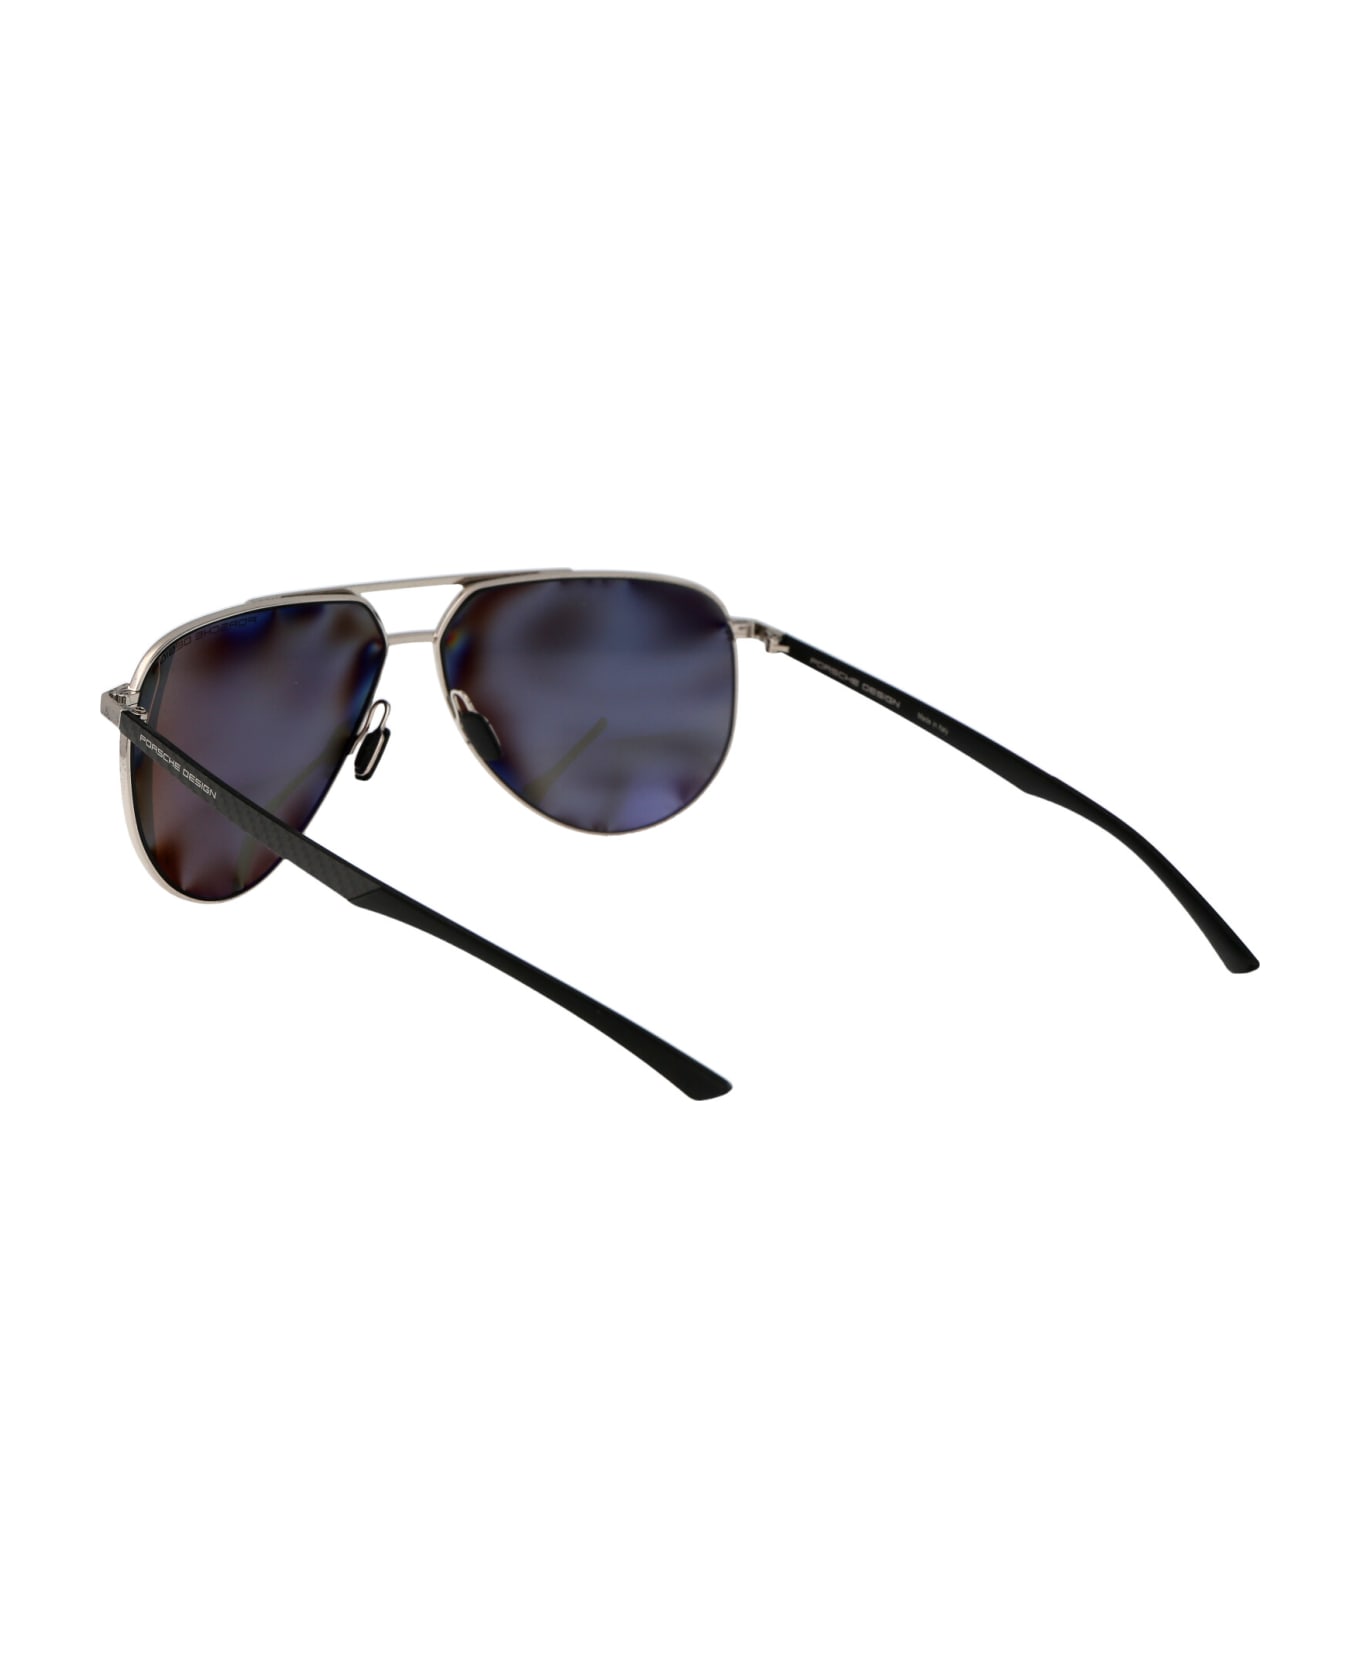 Porsche Design P8962 Sunglasses - B416 PALLADIUM BLACK